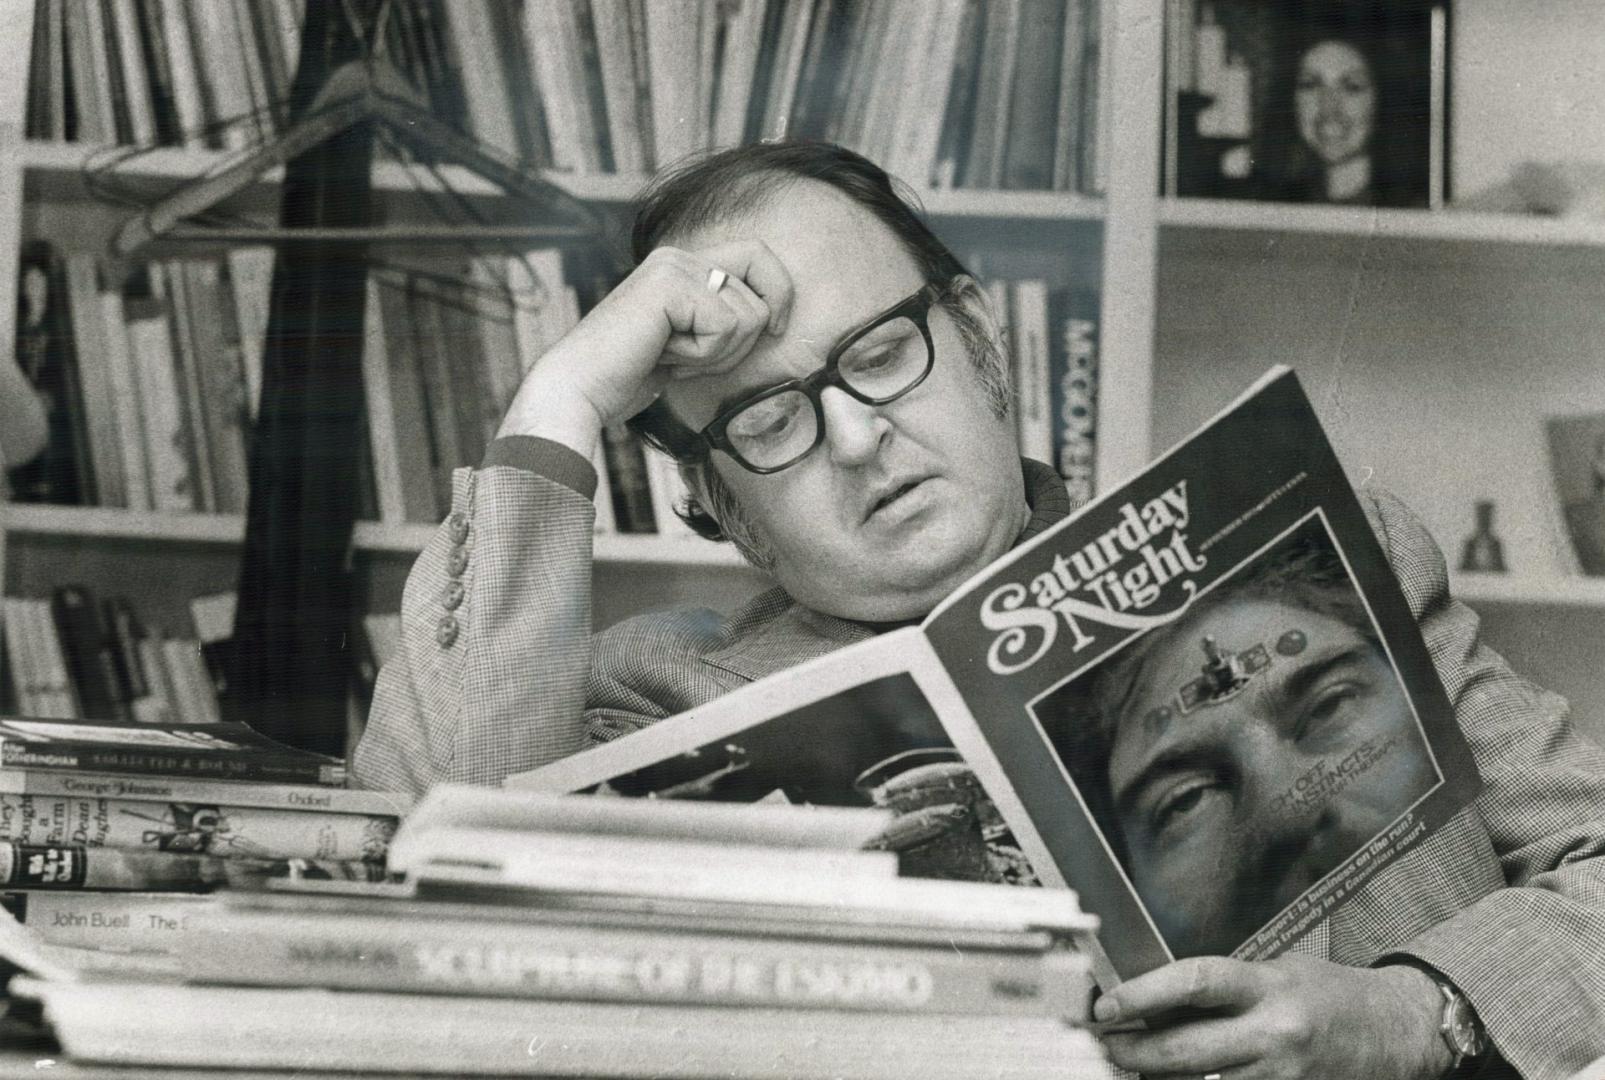 Robert Fulford, editor of Saturday Night magazine